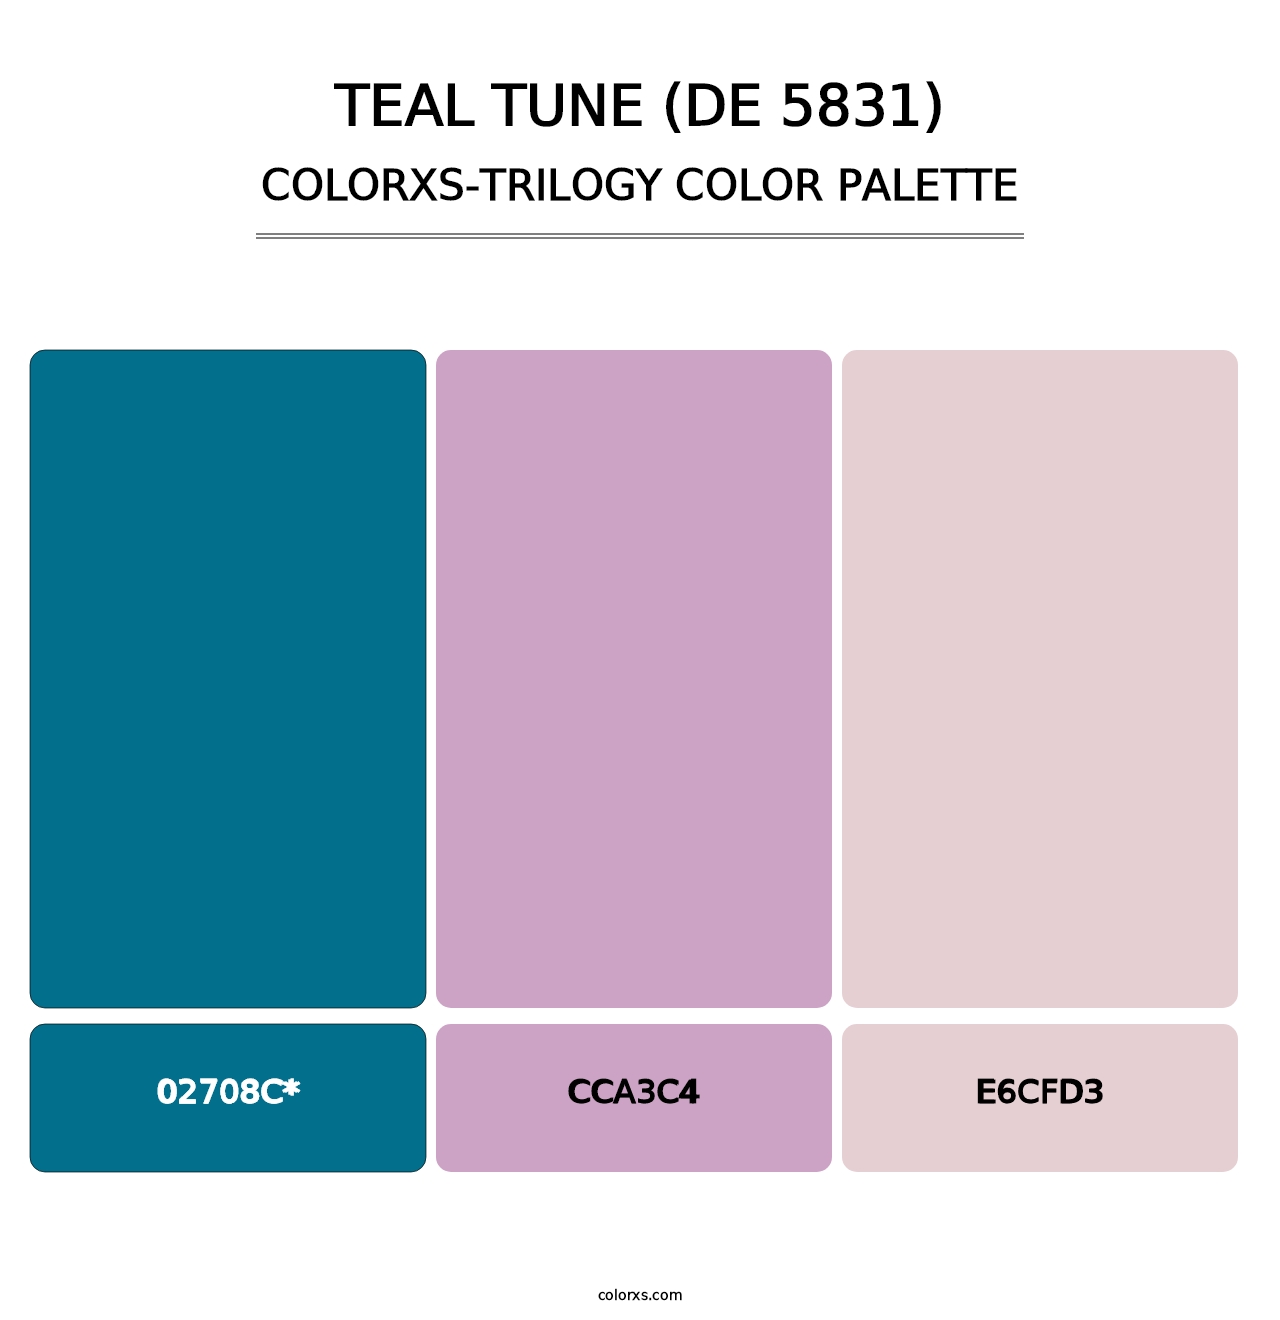 Teal Tune (DE 5831) - Colorxs Trilogy Palette